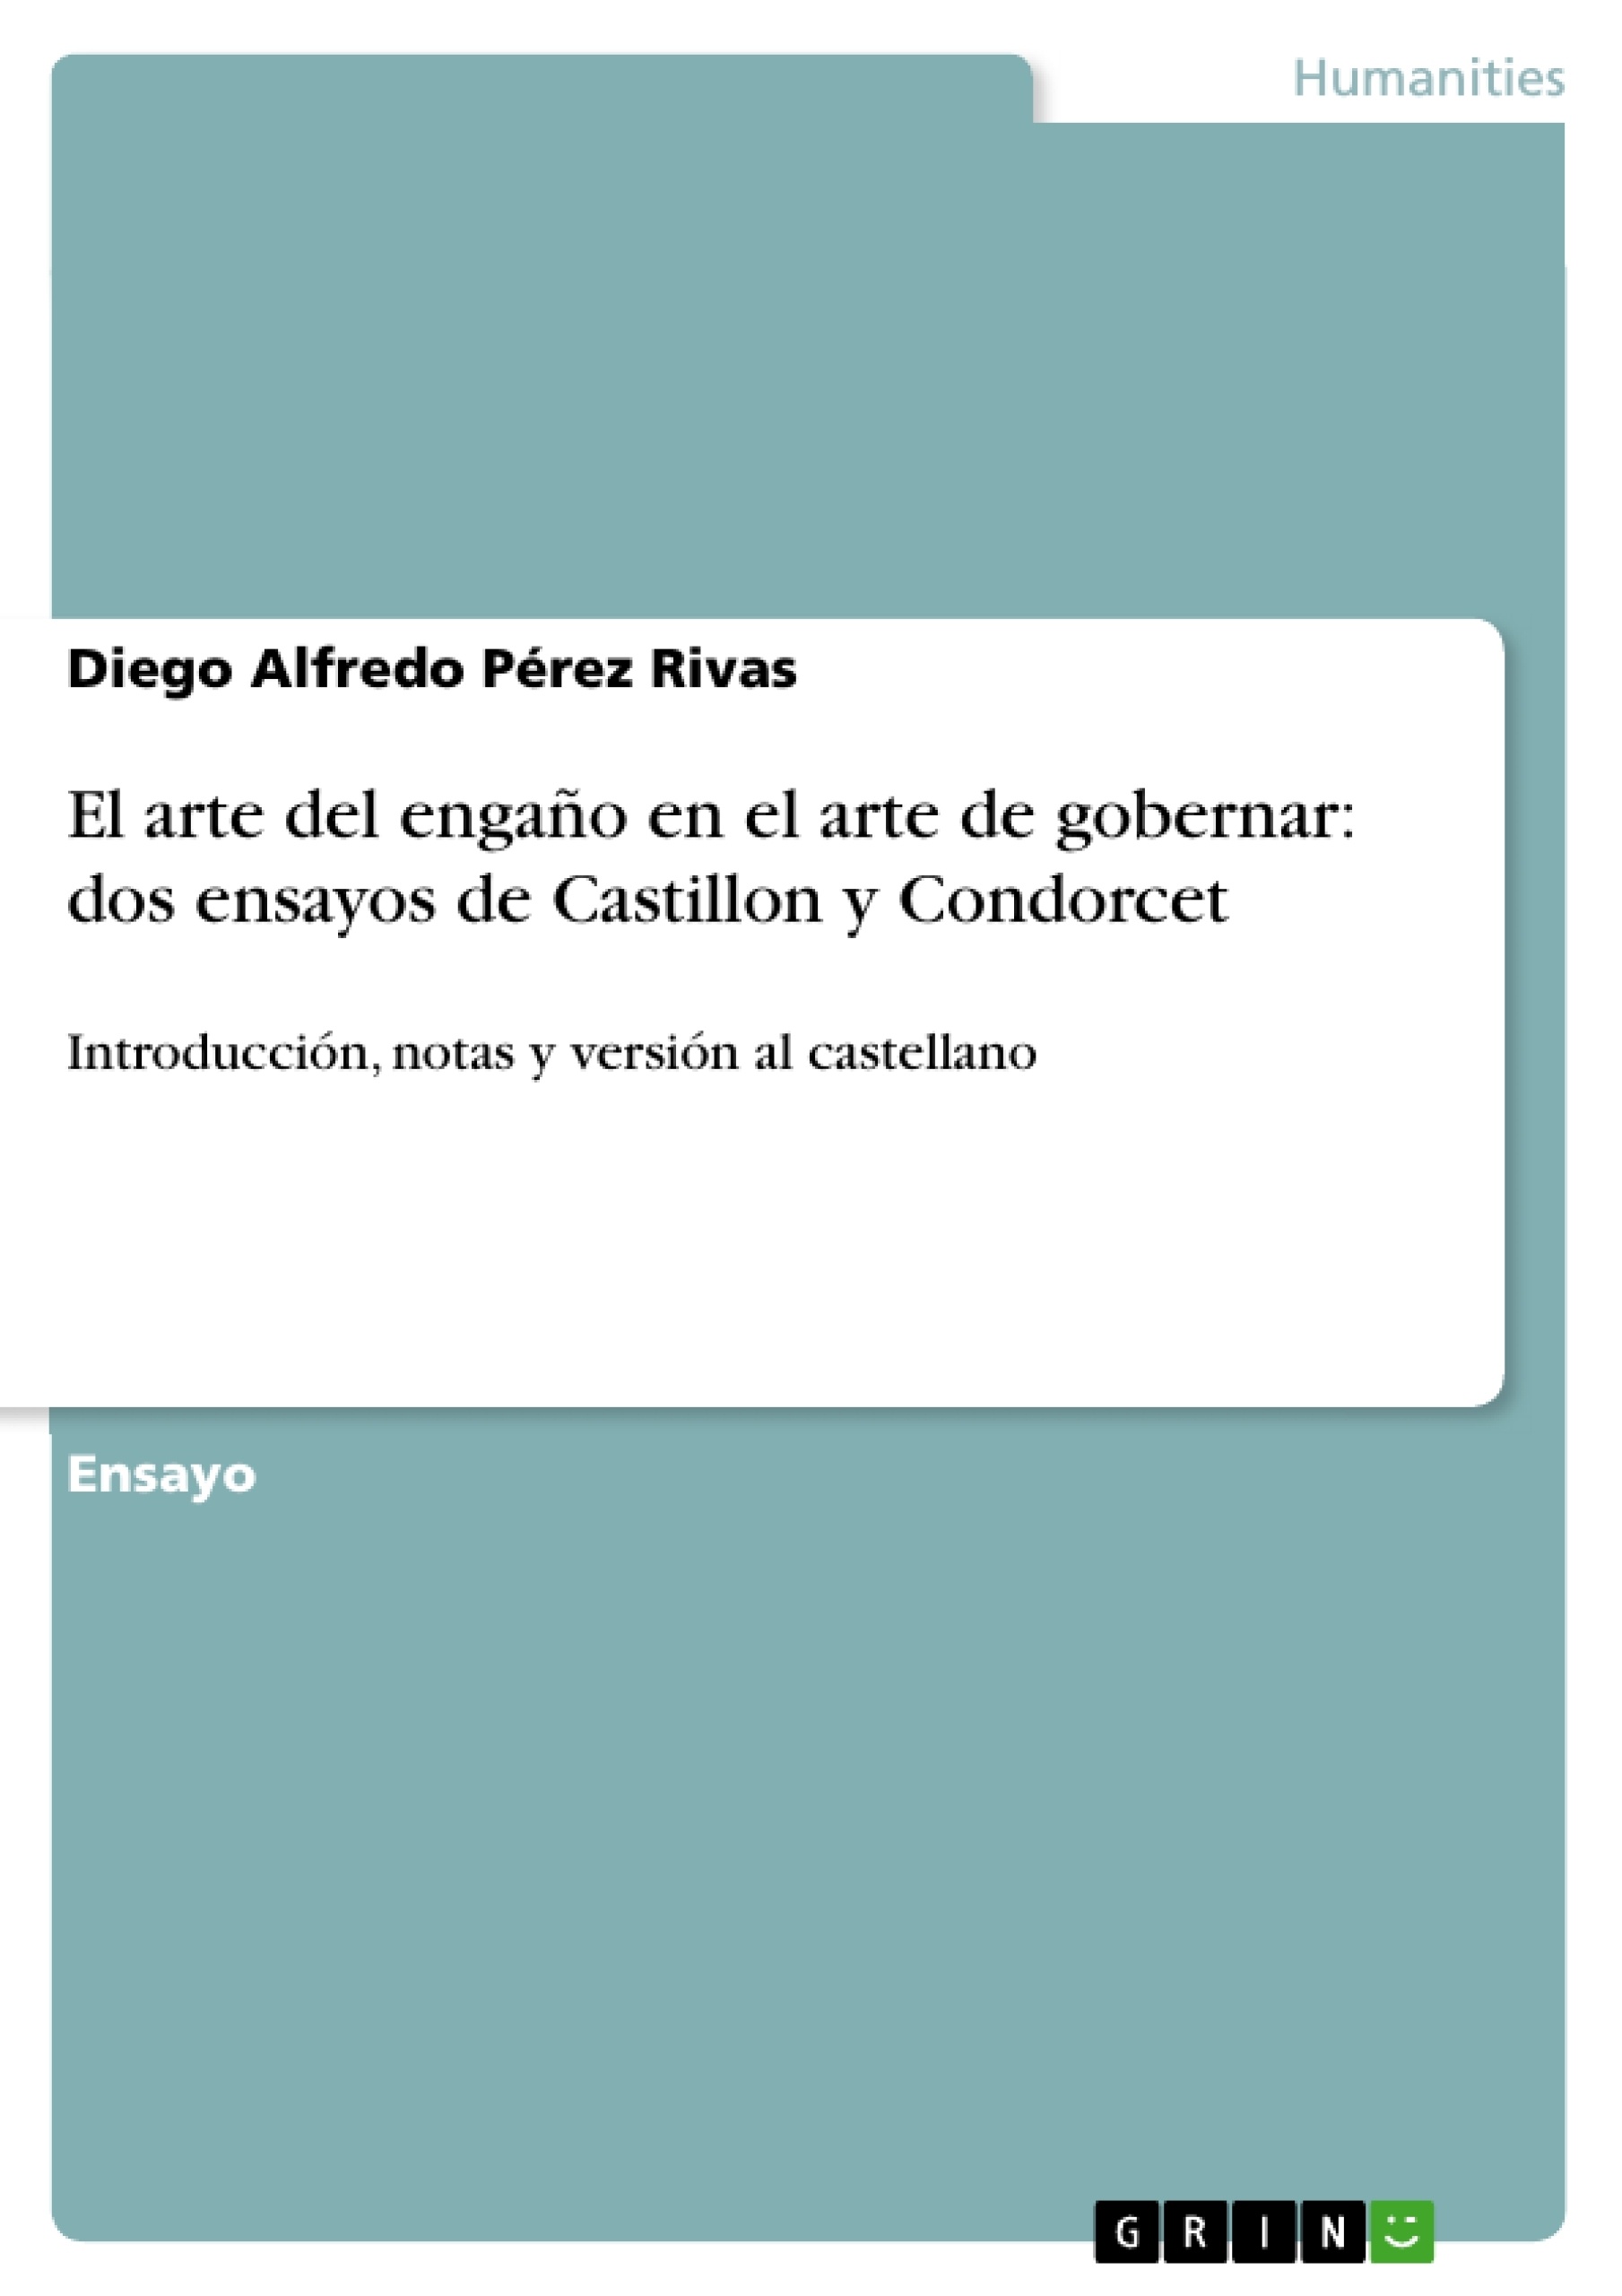 Título: El arte del engaño en el arte de gobernar: dos ensayos de Castillon y Condorcet